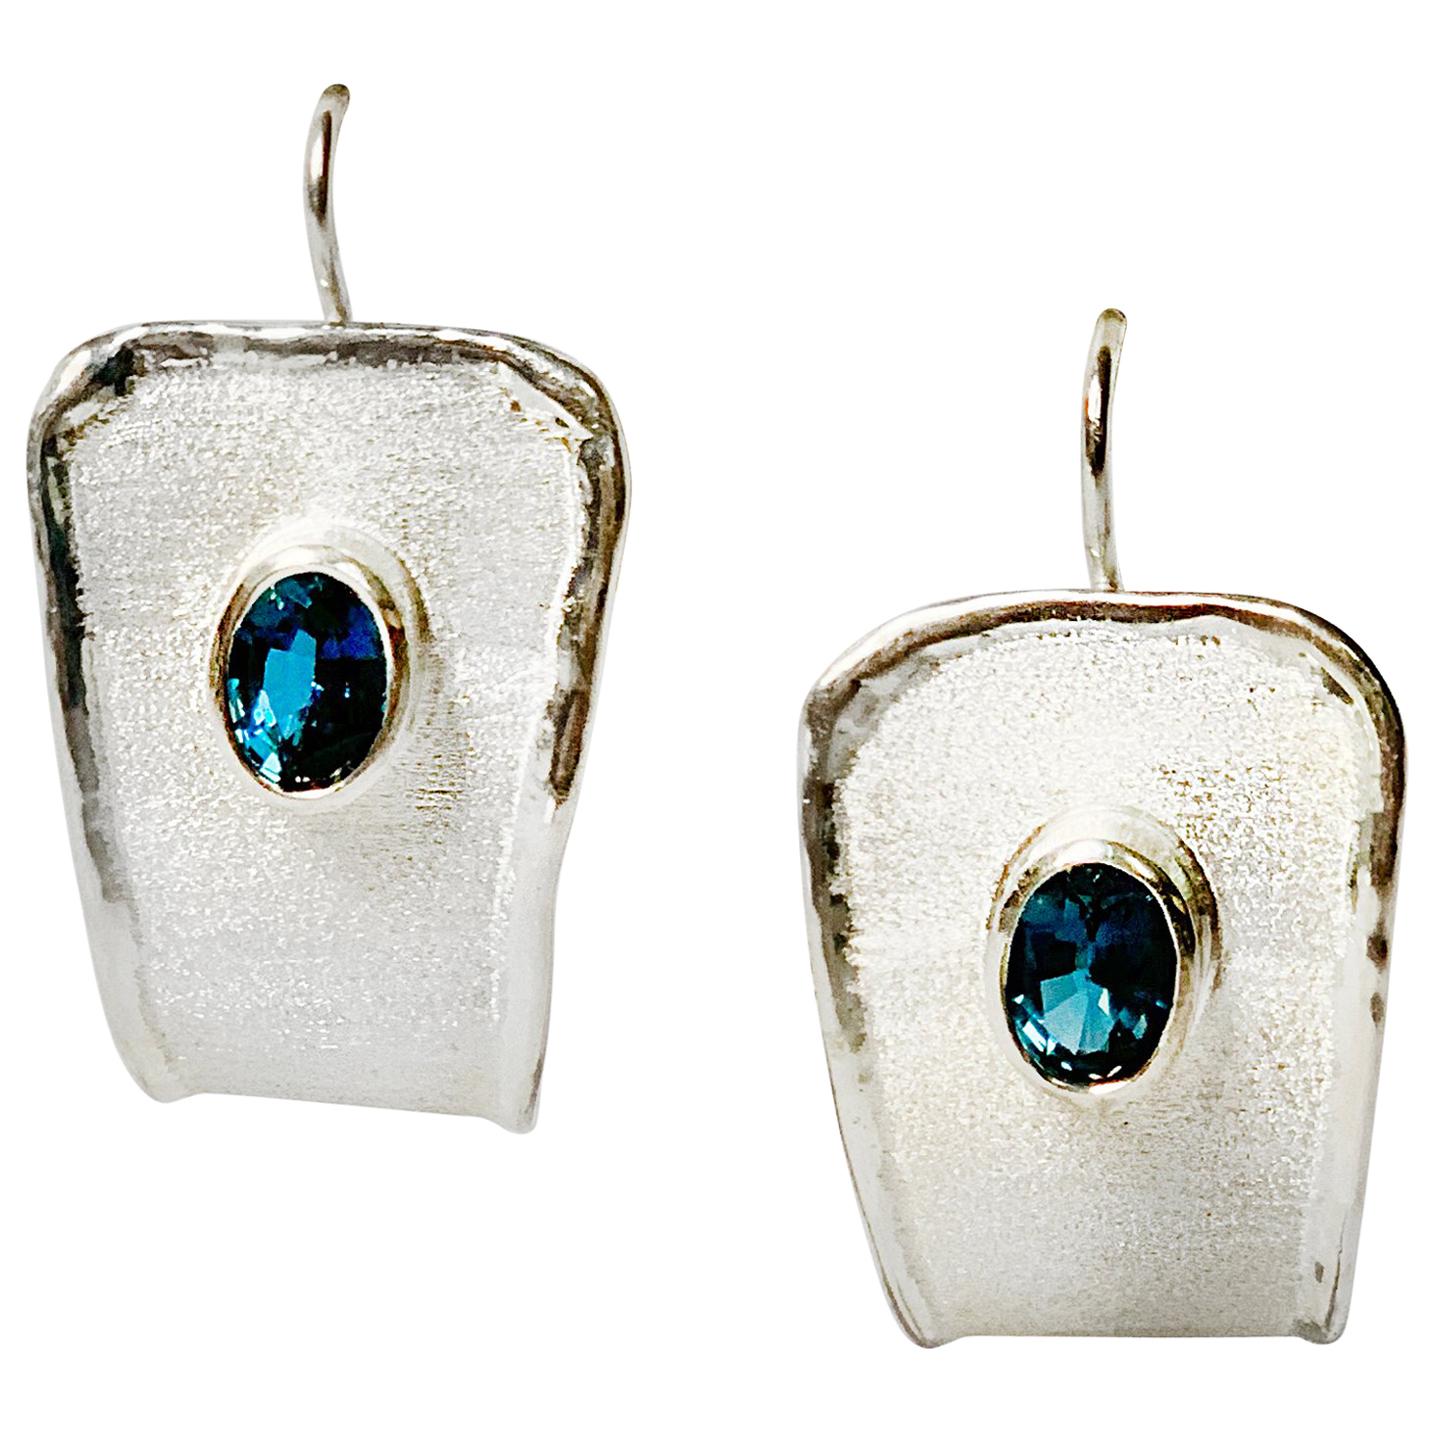 Yianni Creations Ammos Collection 100% handgefertigte handwerkliche Ohrringe aus Feinsilber. Jeder wunderschöne Ohrring besteht aus einem natürlichen Londoner Blautopas im Ovalschliff von 1,20 Karat, der durch einzigartige Handwerkstechniken ergänzt